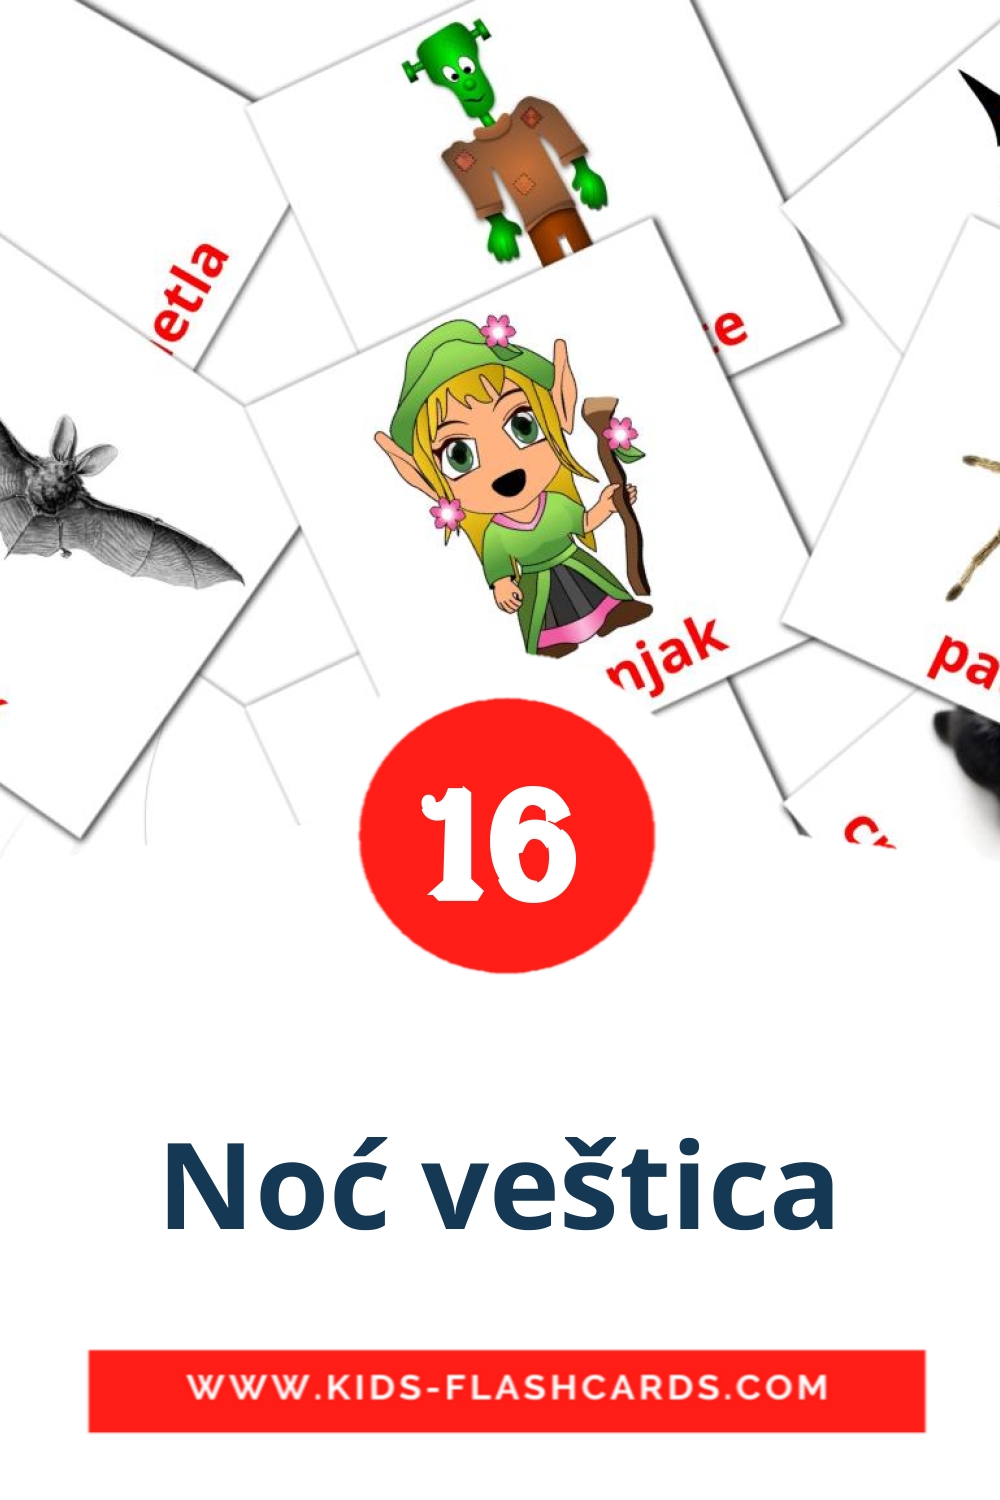 Noć veštica на сербском для Детского Сада (16 карточек)